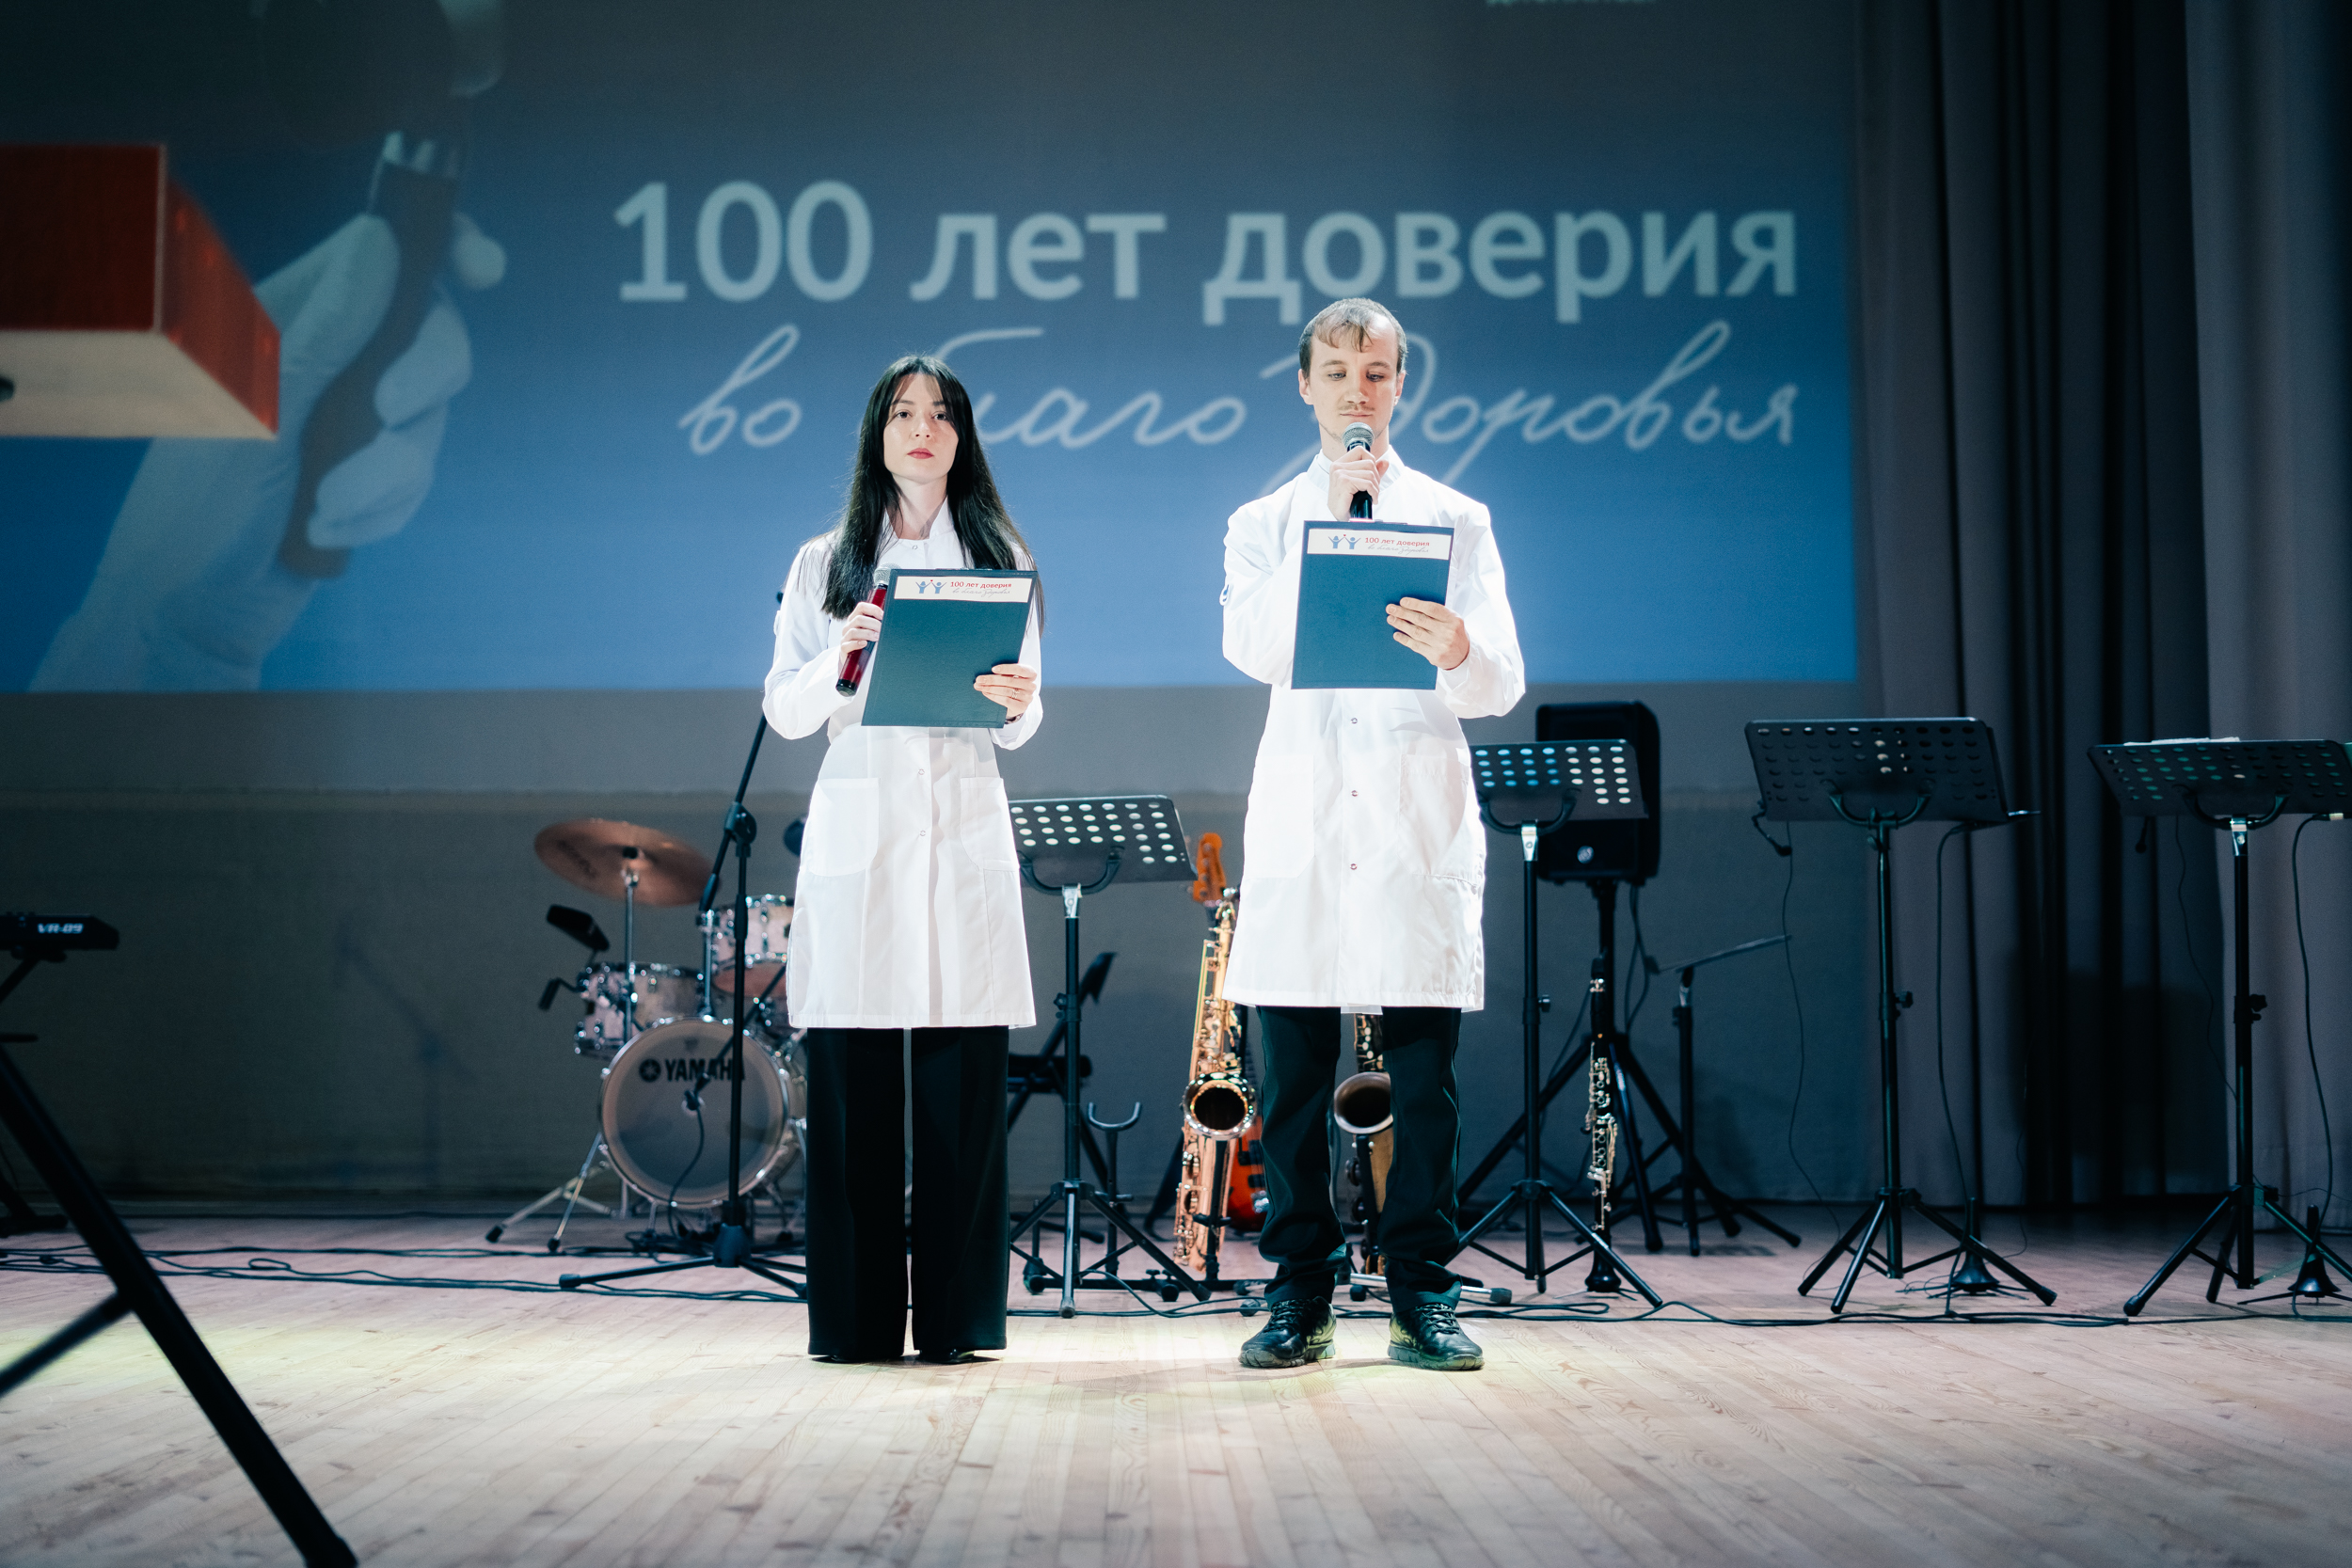 29 марта в Ульяновске впервые состоялась научно-практическая конференция, посвящённая 100-летию Ульяновского областного клинического кожно-венерологического диспансера